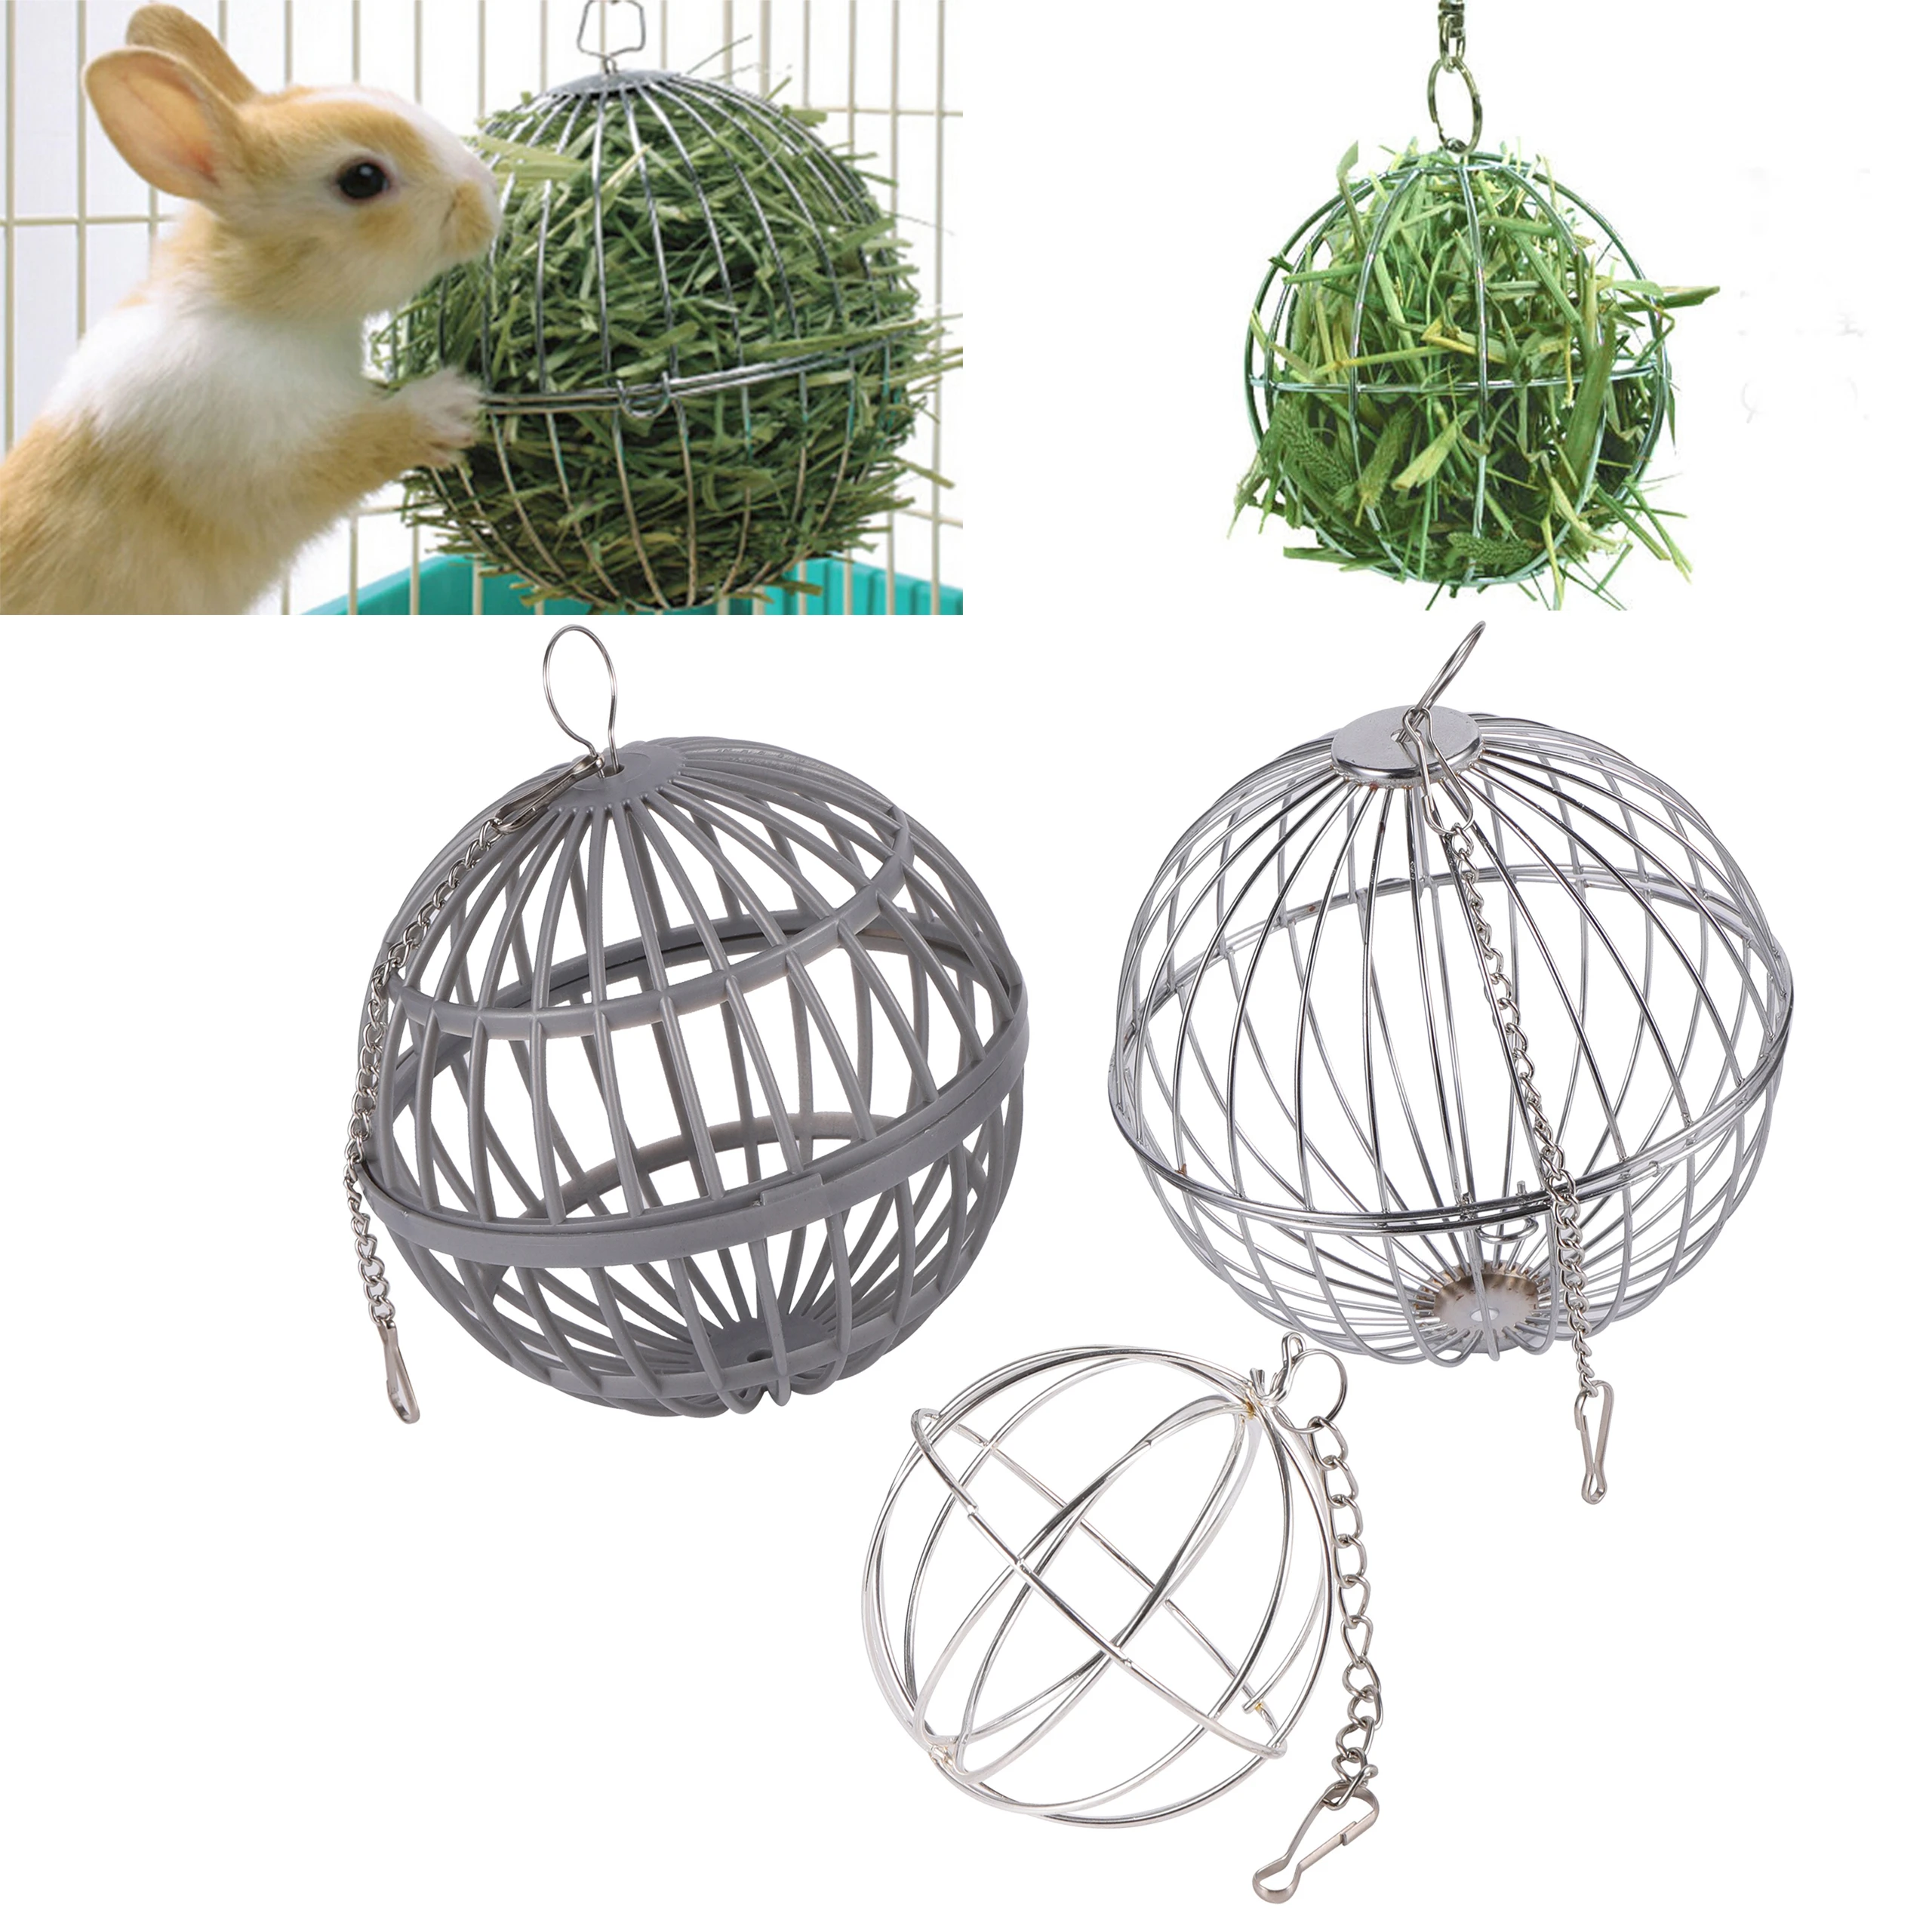 Roestvrij Staal/Plastic Ronde Sphere Feed Doseer Oefening Hooi Bal Cavia Hamster Konijn Huisdier Speelgoed Huisdier 1Pc|Speelgoed| -